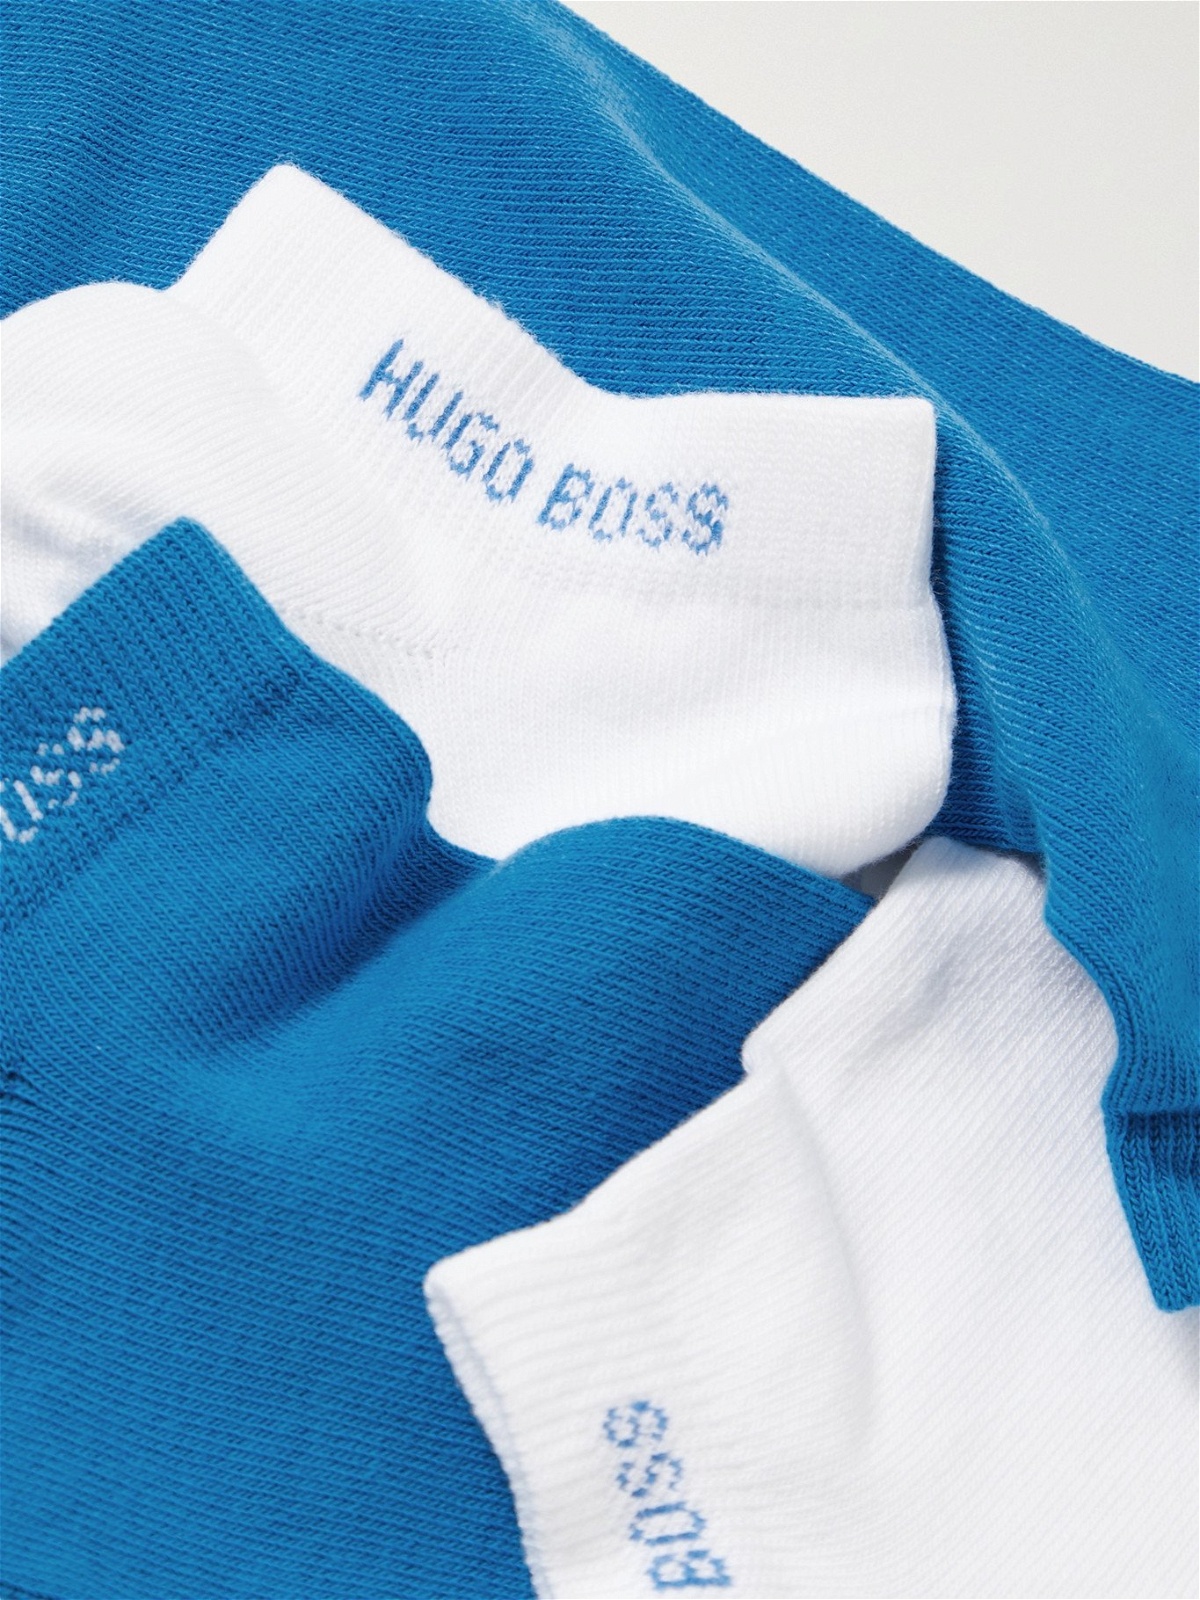 HUGO BOSS - Two-Pack Stretch Cotton-Blend No-Show Socks - Multi - EU 39/42